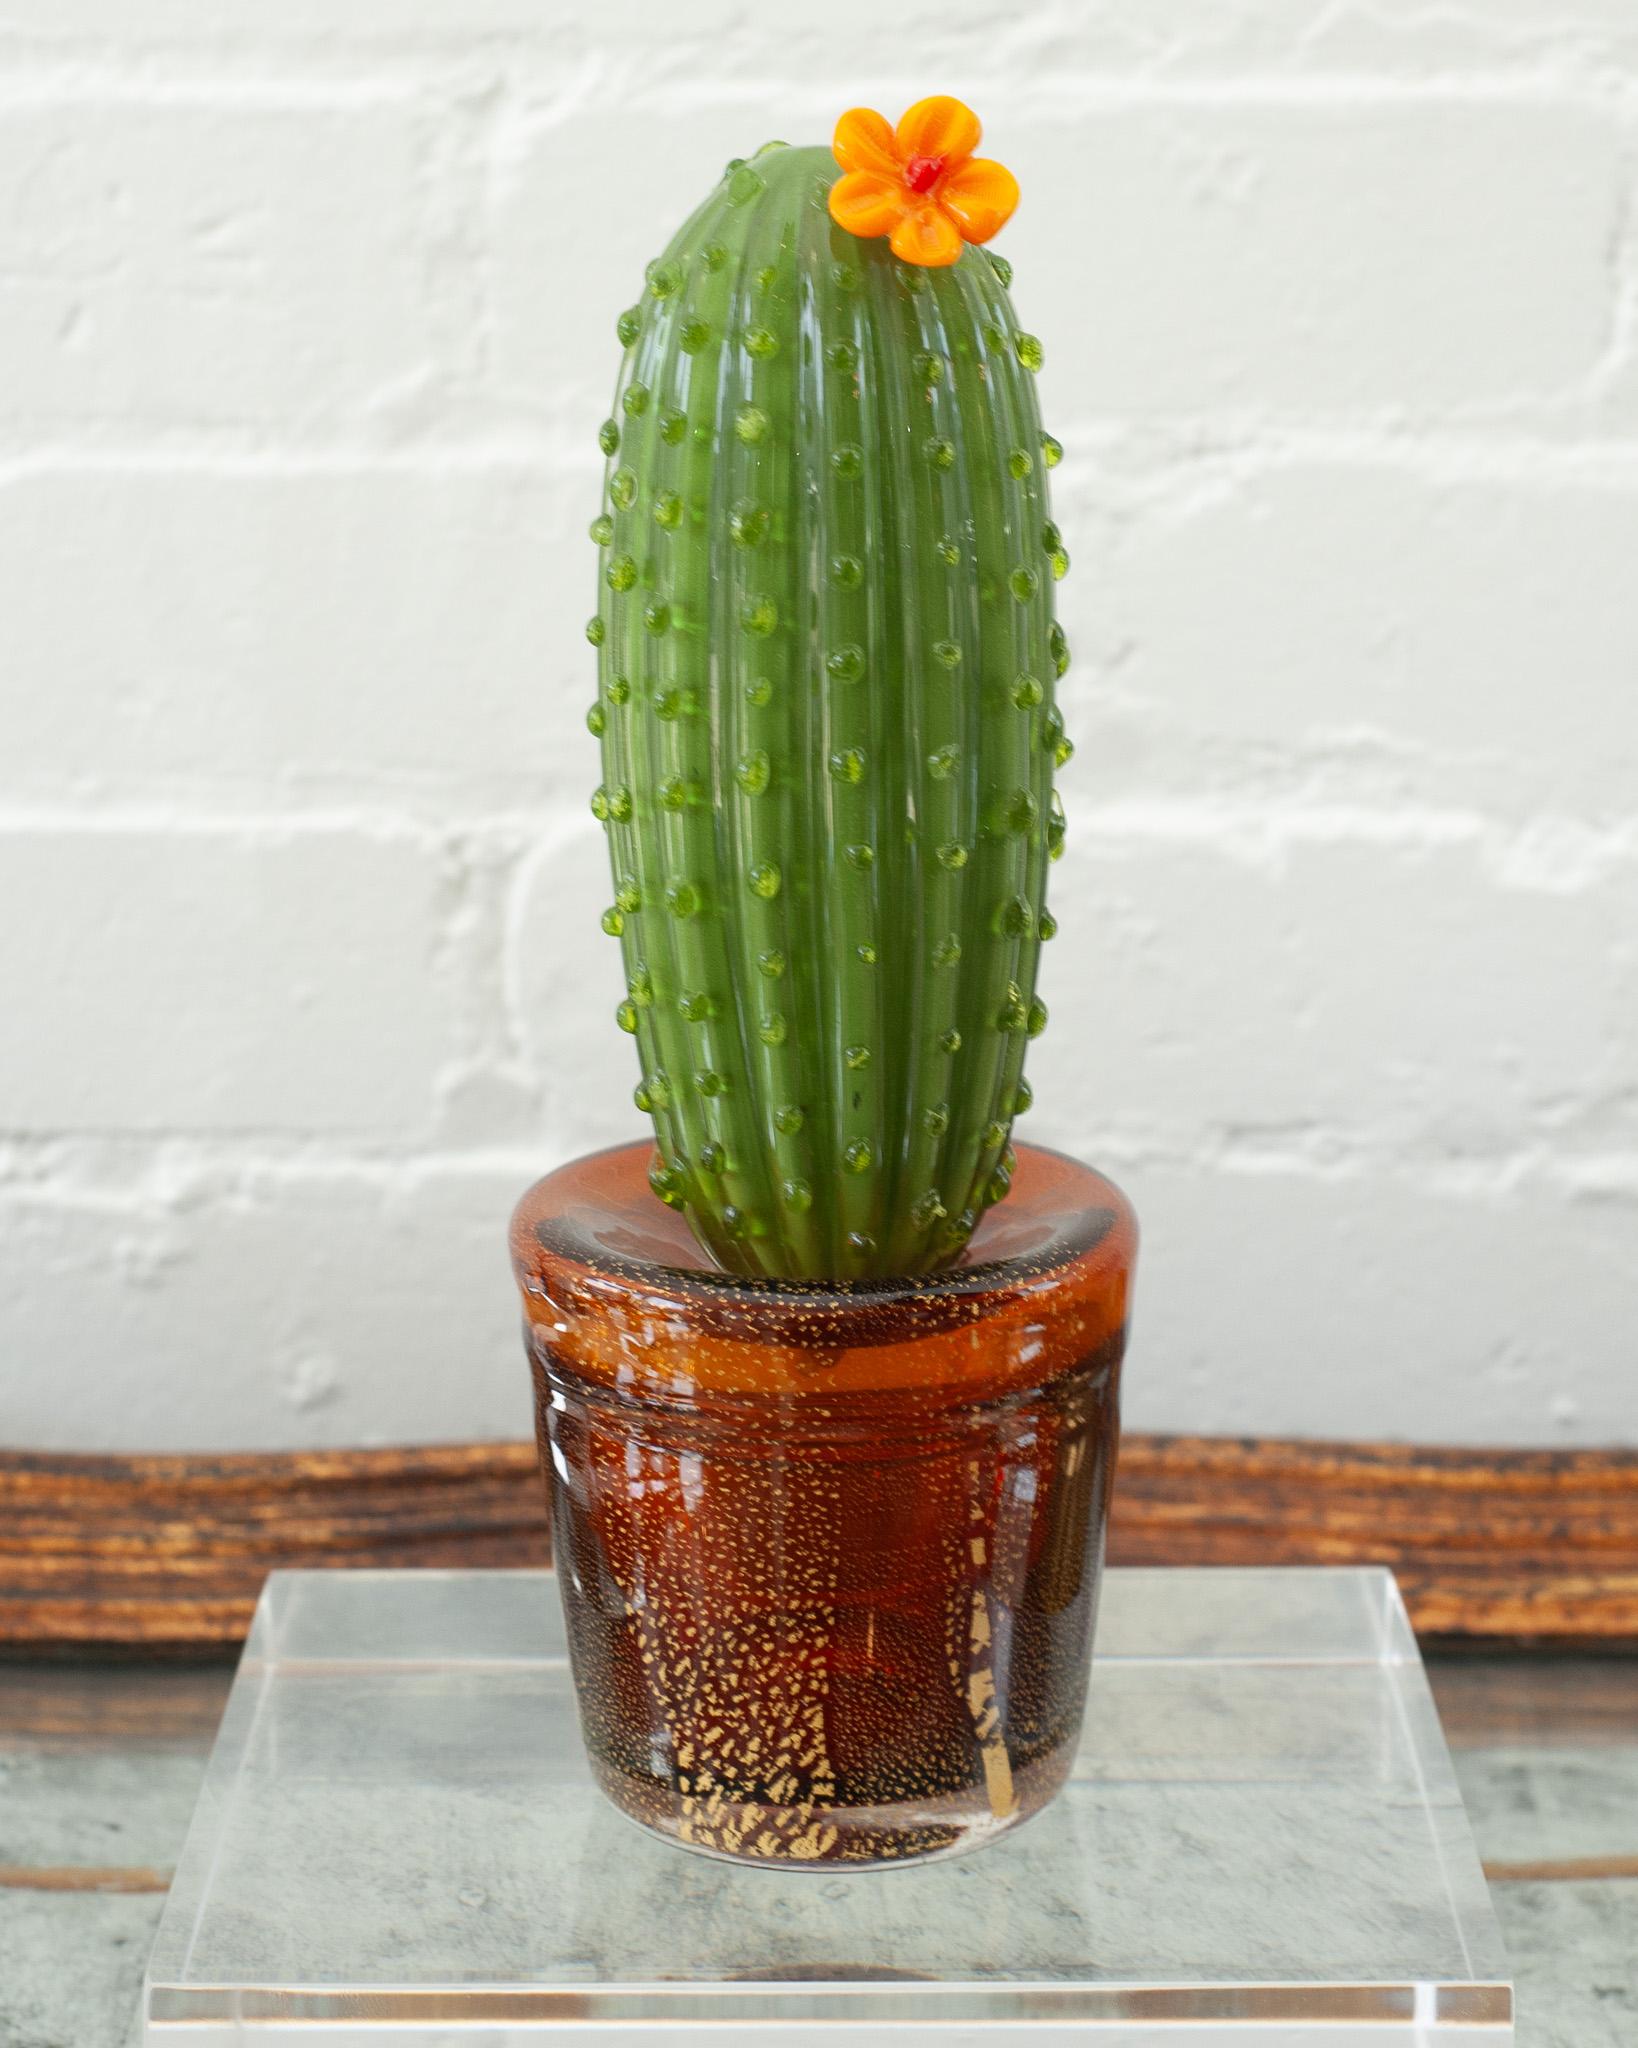 Acaba de llegar a Maison Nurita un impresionante cactus vintage de cristal de murano de alrededor de 1990. Enteramente soplada a mano en vidrio, esta escultura inusual y vibrante se atribuye a la famosa diseñadora italiana de moda y joyas Marta